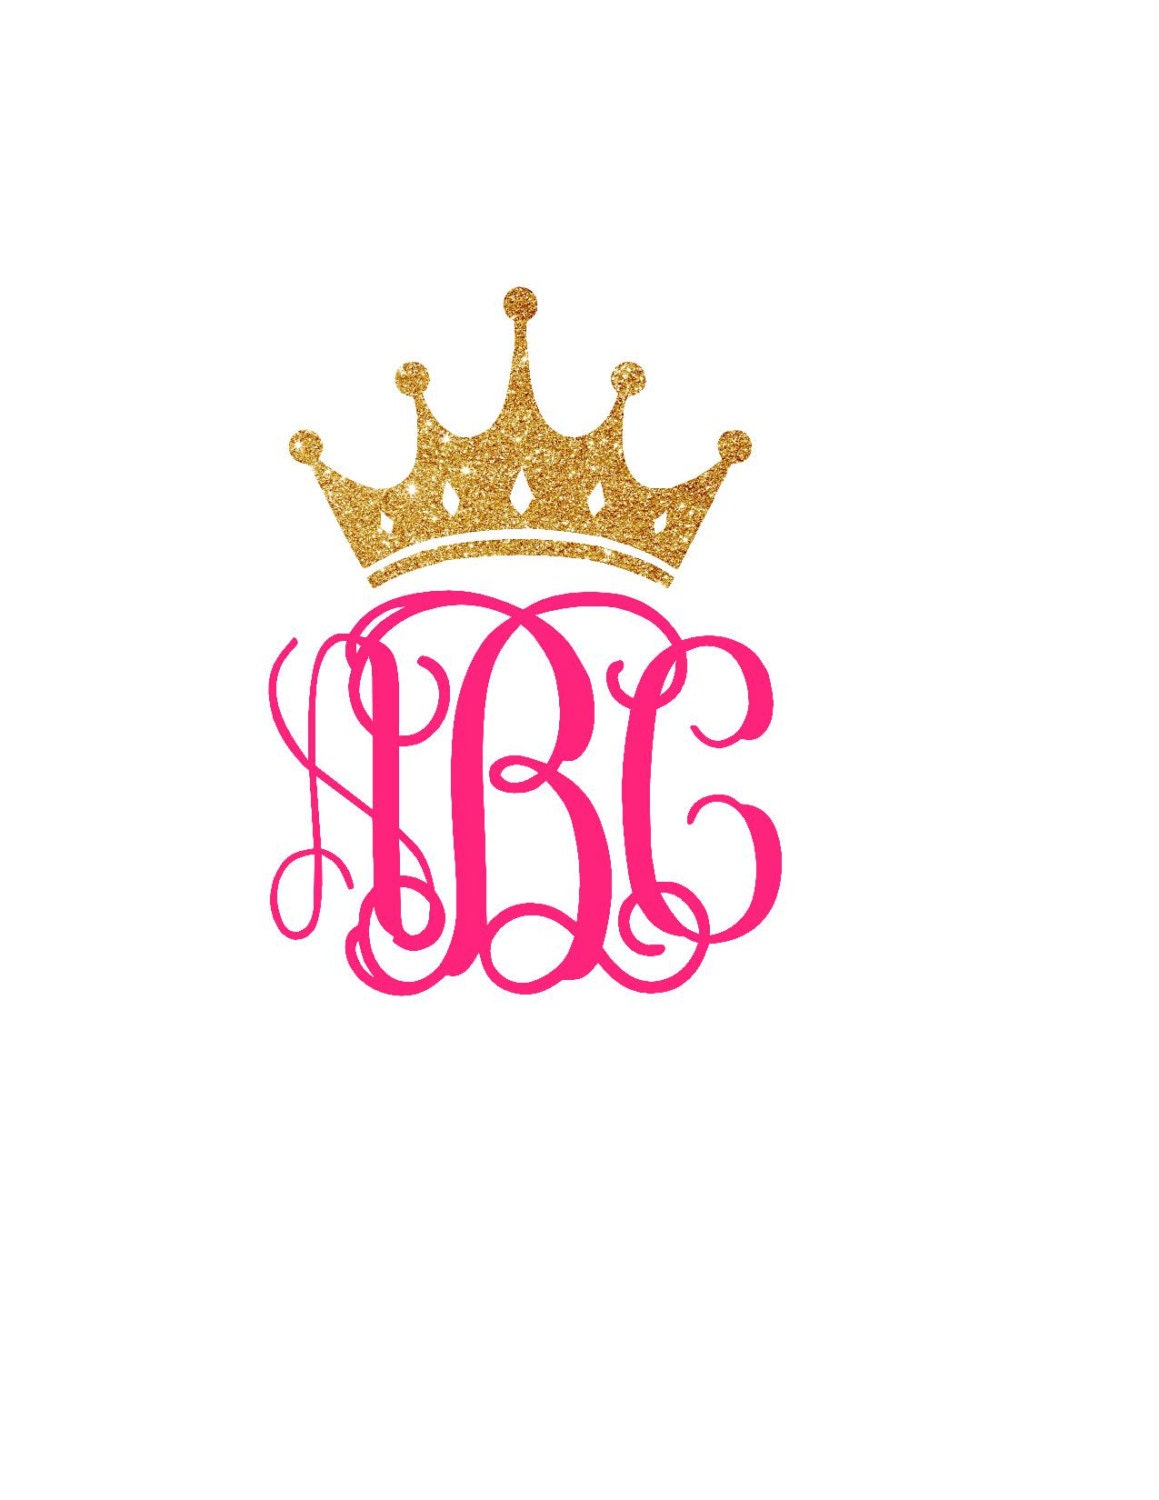 Download Monogram Crown Decal Full Crown Monogram Decal Princess